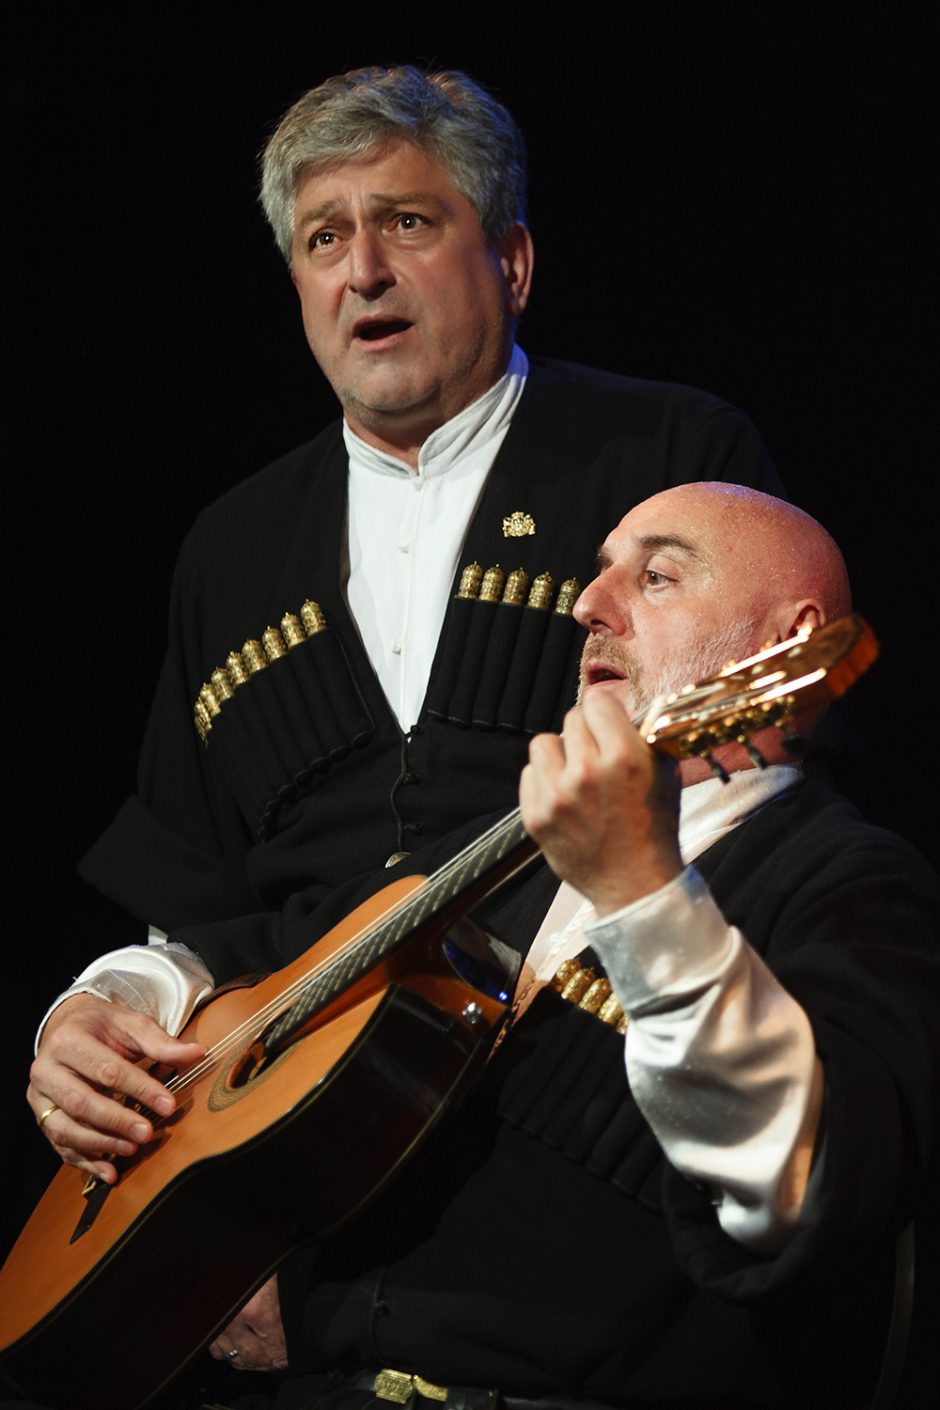 Sakartvelo operos žvaigždės „Suliko“ surengs koncertą Panevėžyje